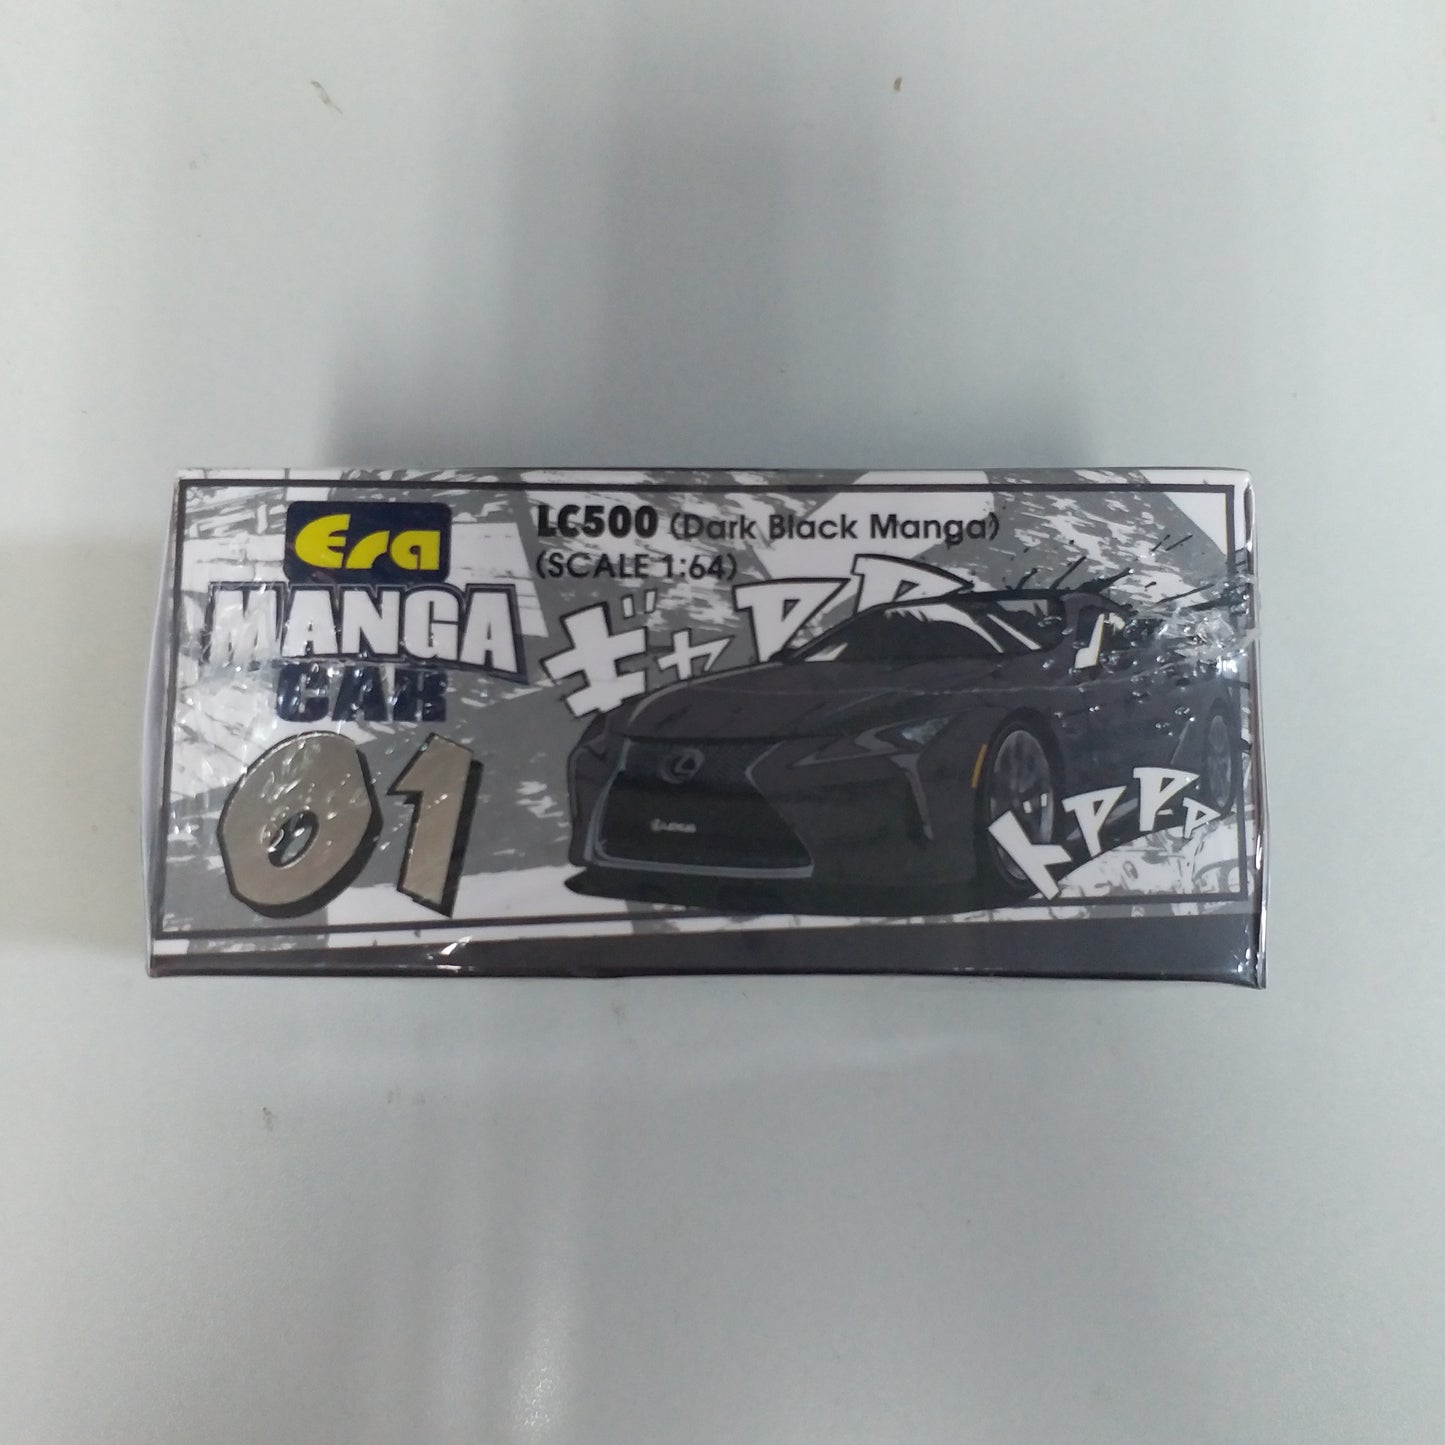 ERA CAR 1:64 #7 LB LC500 (Dark Black Manga)